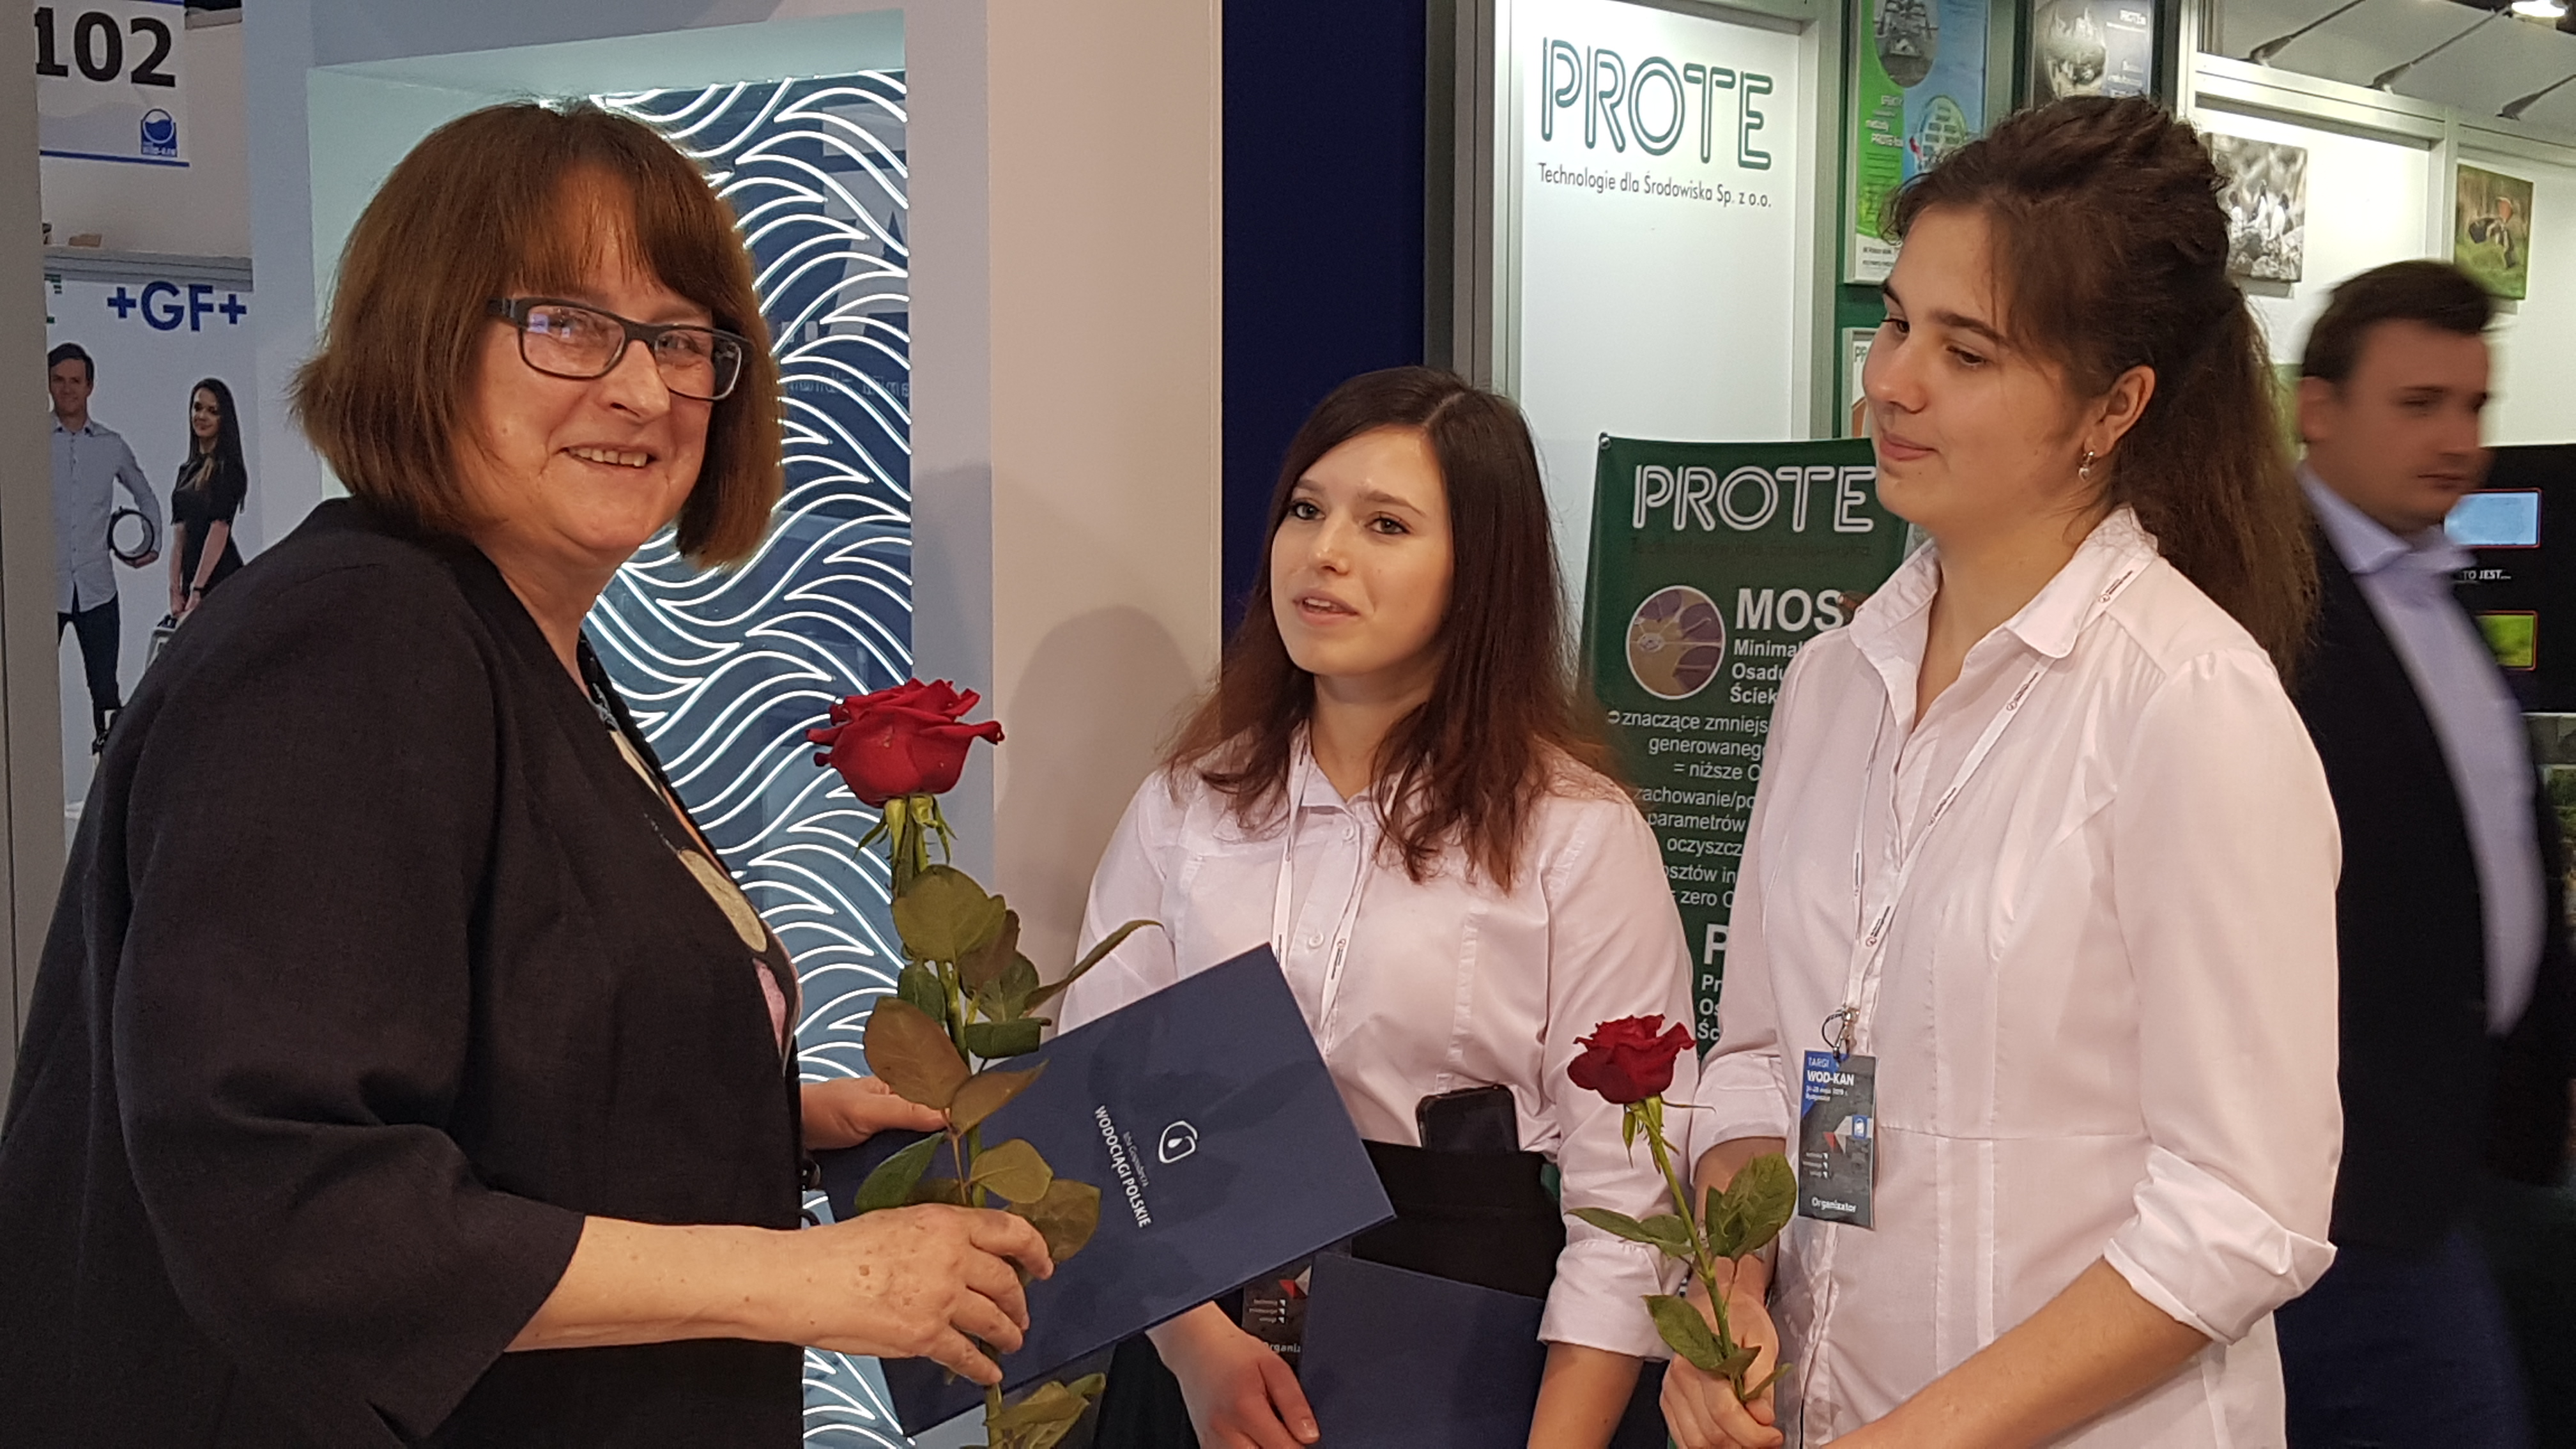 Gratulanten zum 20jährigen Firmenjubiläum auf der WOD-KAN 2019. Links die Geschäftsführerin von Meva-Pol, Krystyna Taylor.